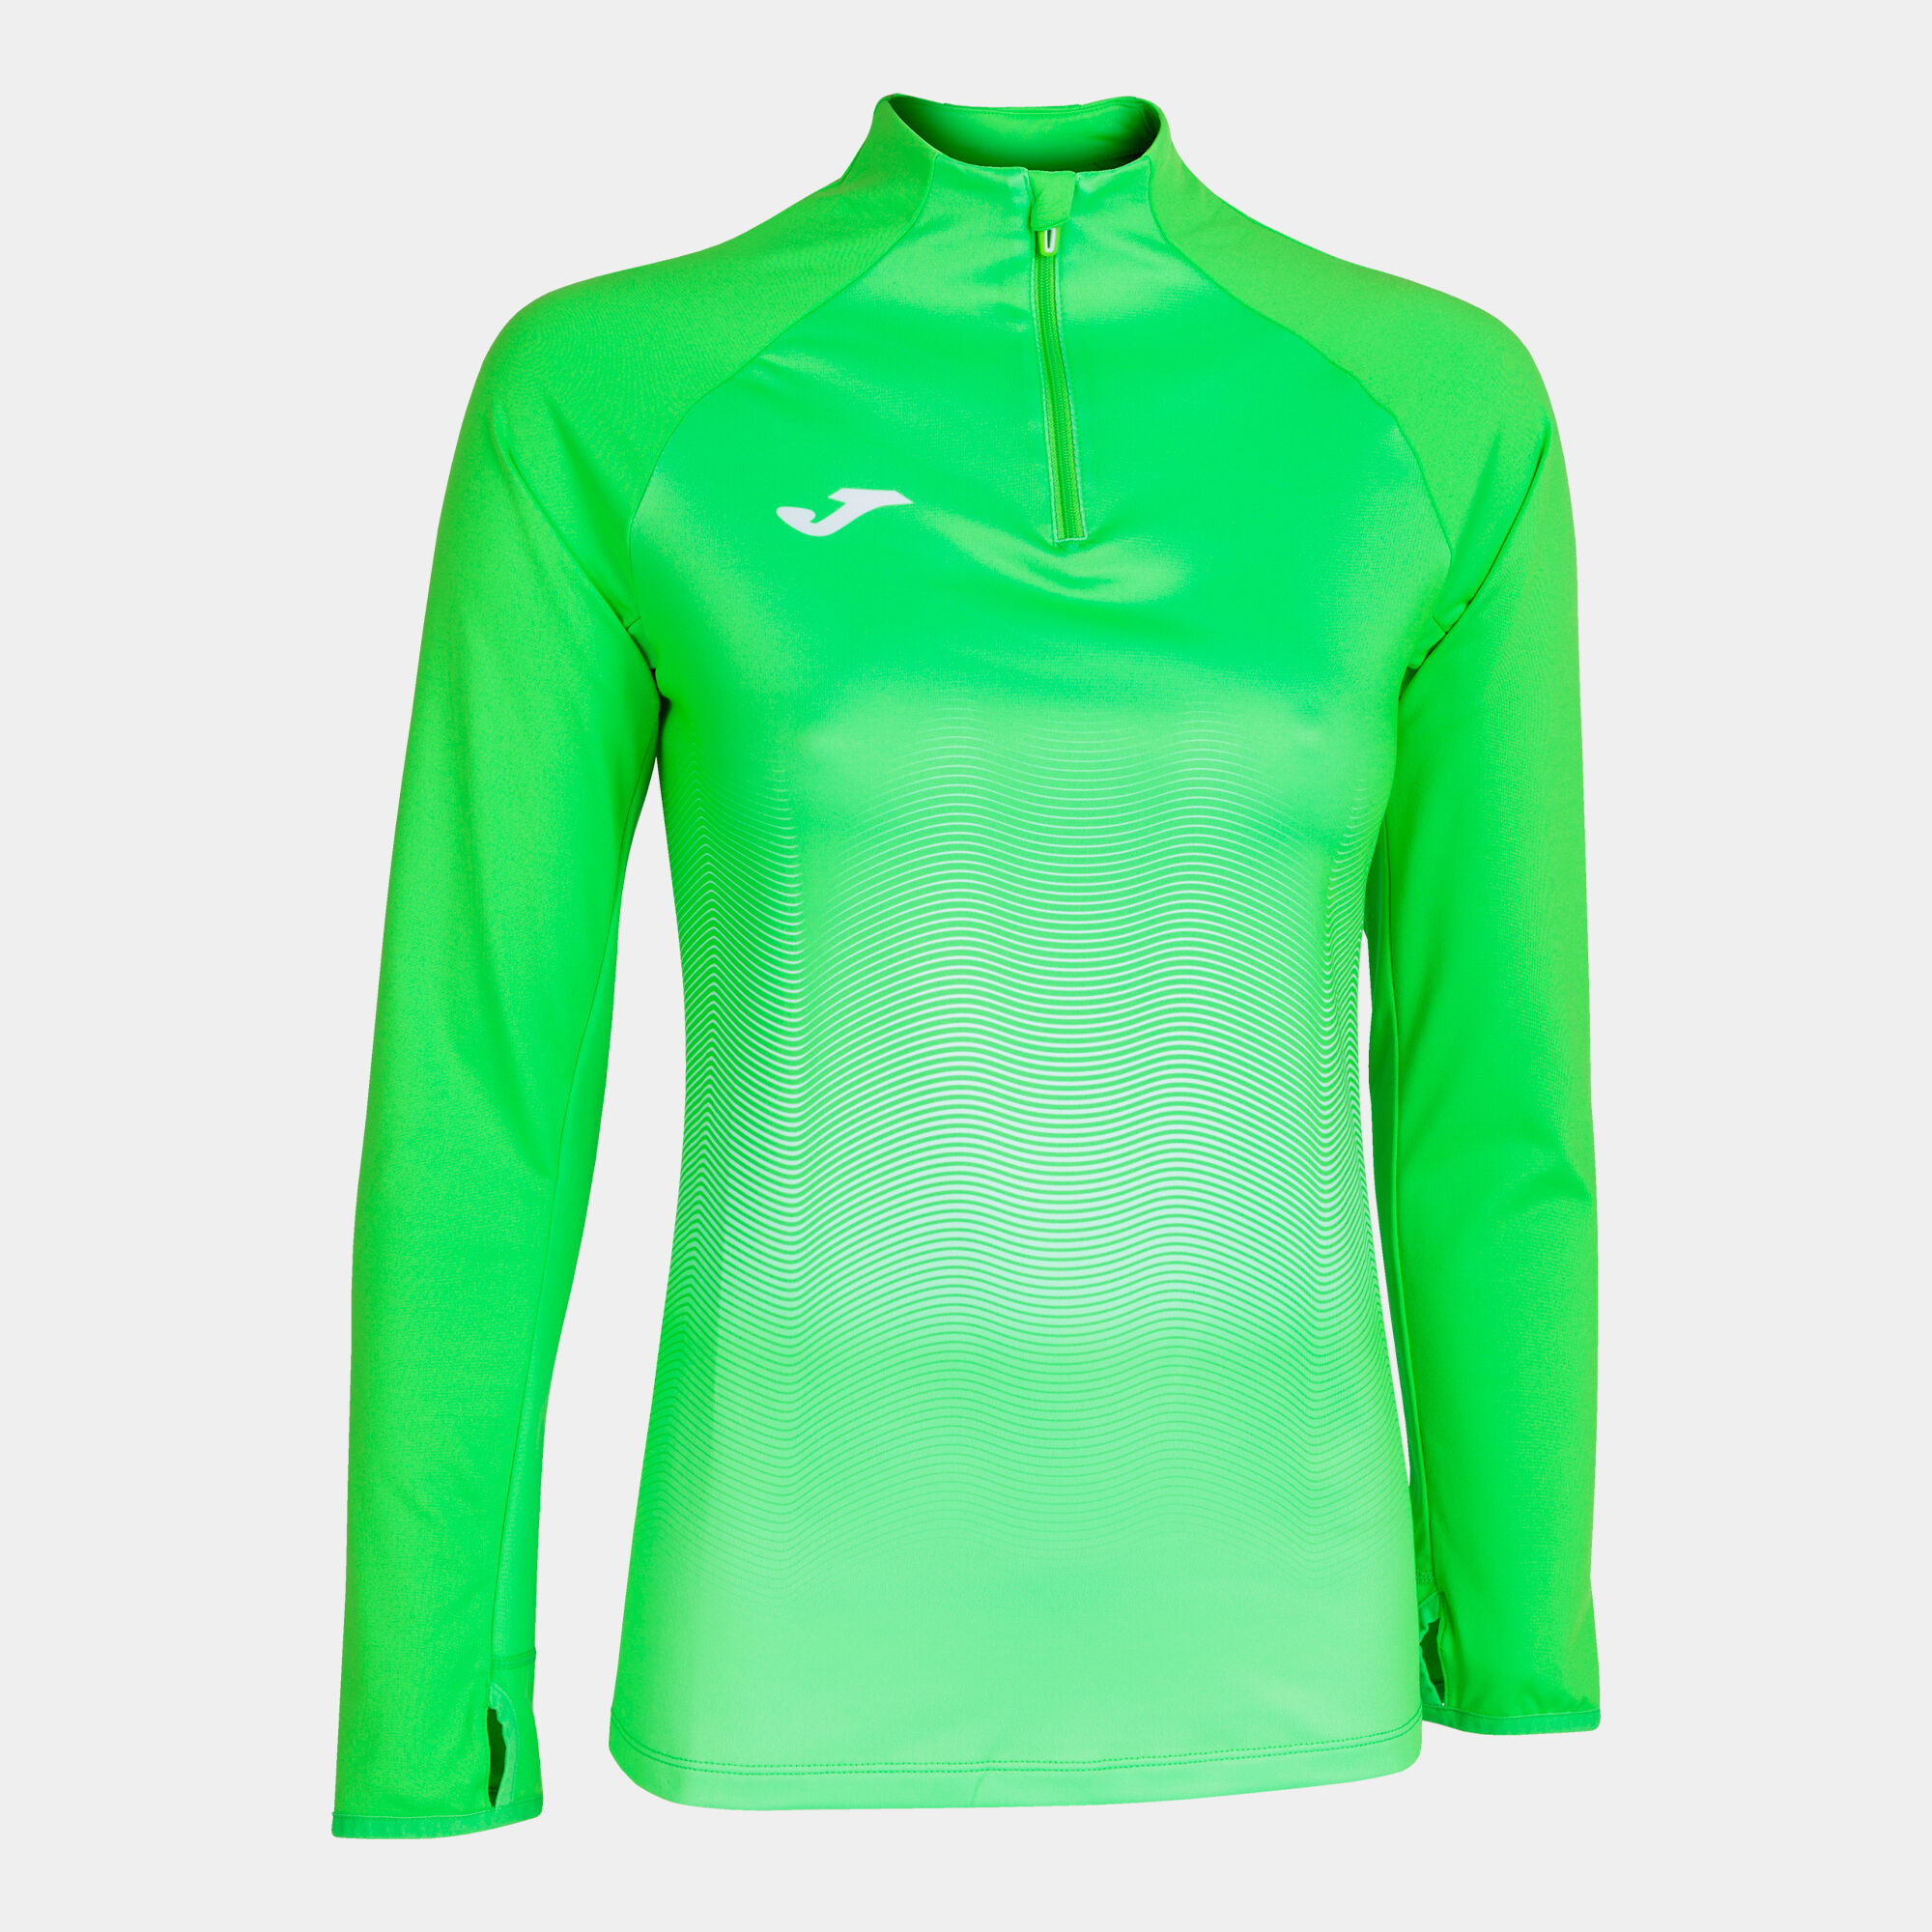 Sweat-shirt femme Elite VII vert fluo blanc